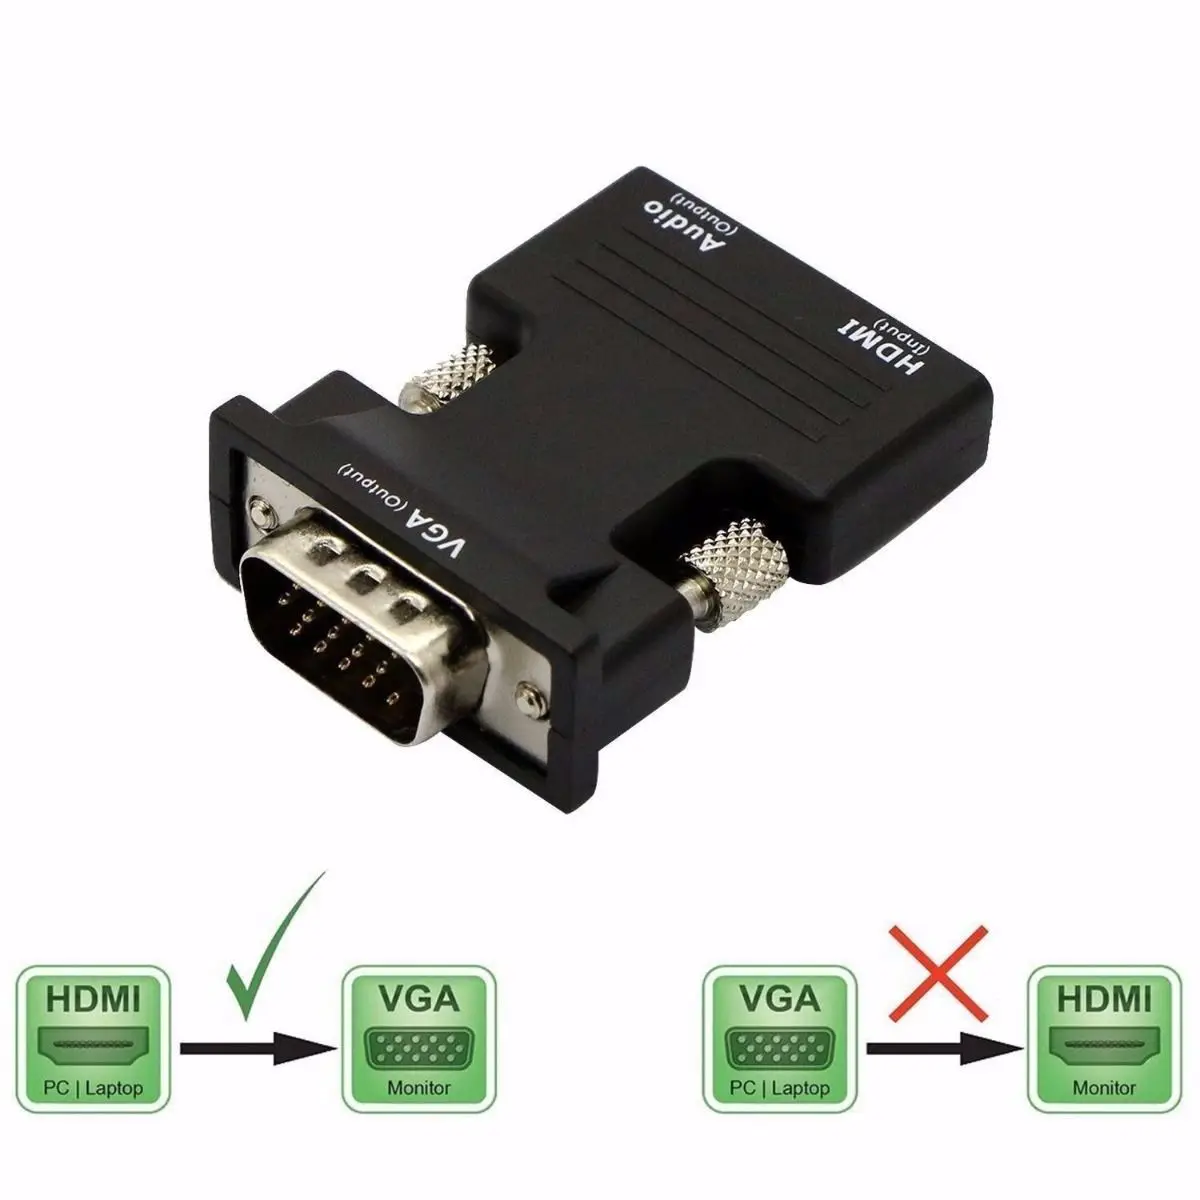 

Адаптер HDMI-совместимый с женским и мужским разъемами VGA, поддержка 1080P для ПК, ноутбуков, телевизоров, мониторов, проекторов с аудиокабелем 3,5...